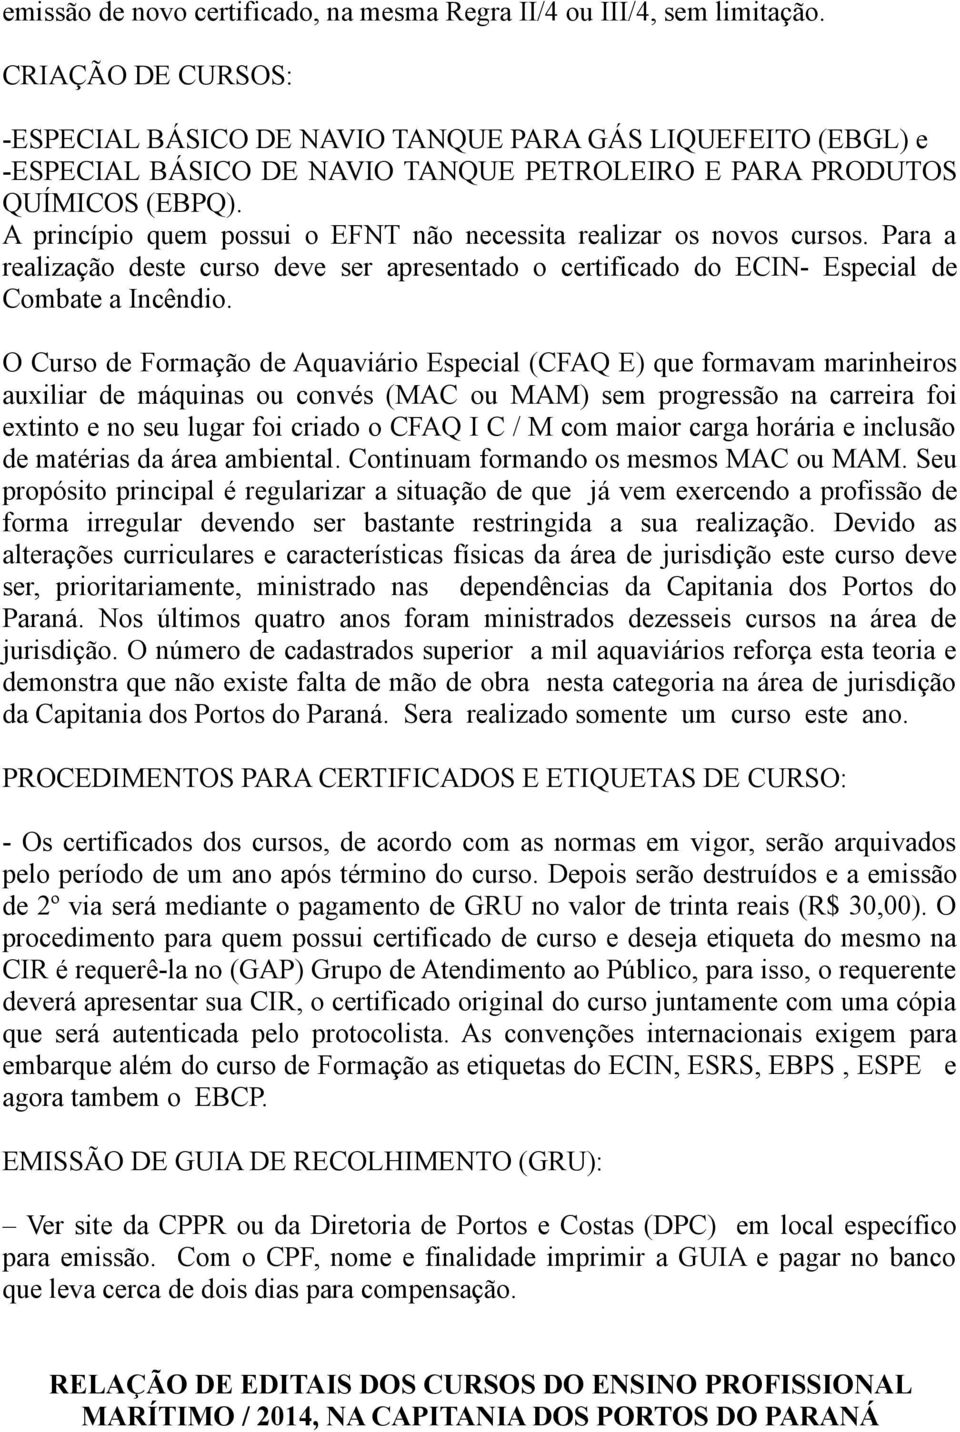 A princípio quem possui o EFNT não necessita realizar os novos cursos. Para a realização deste curso deve ser apresentado o certificado do ECIN- Especial de Combate a Incêndio.